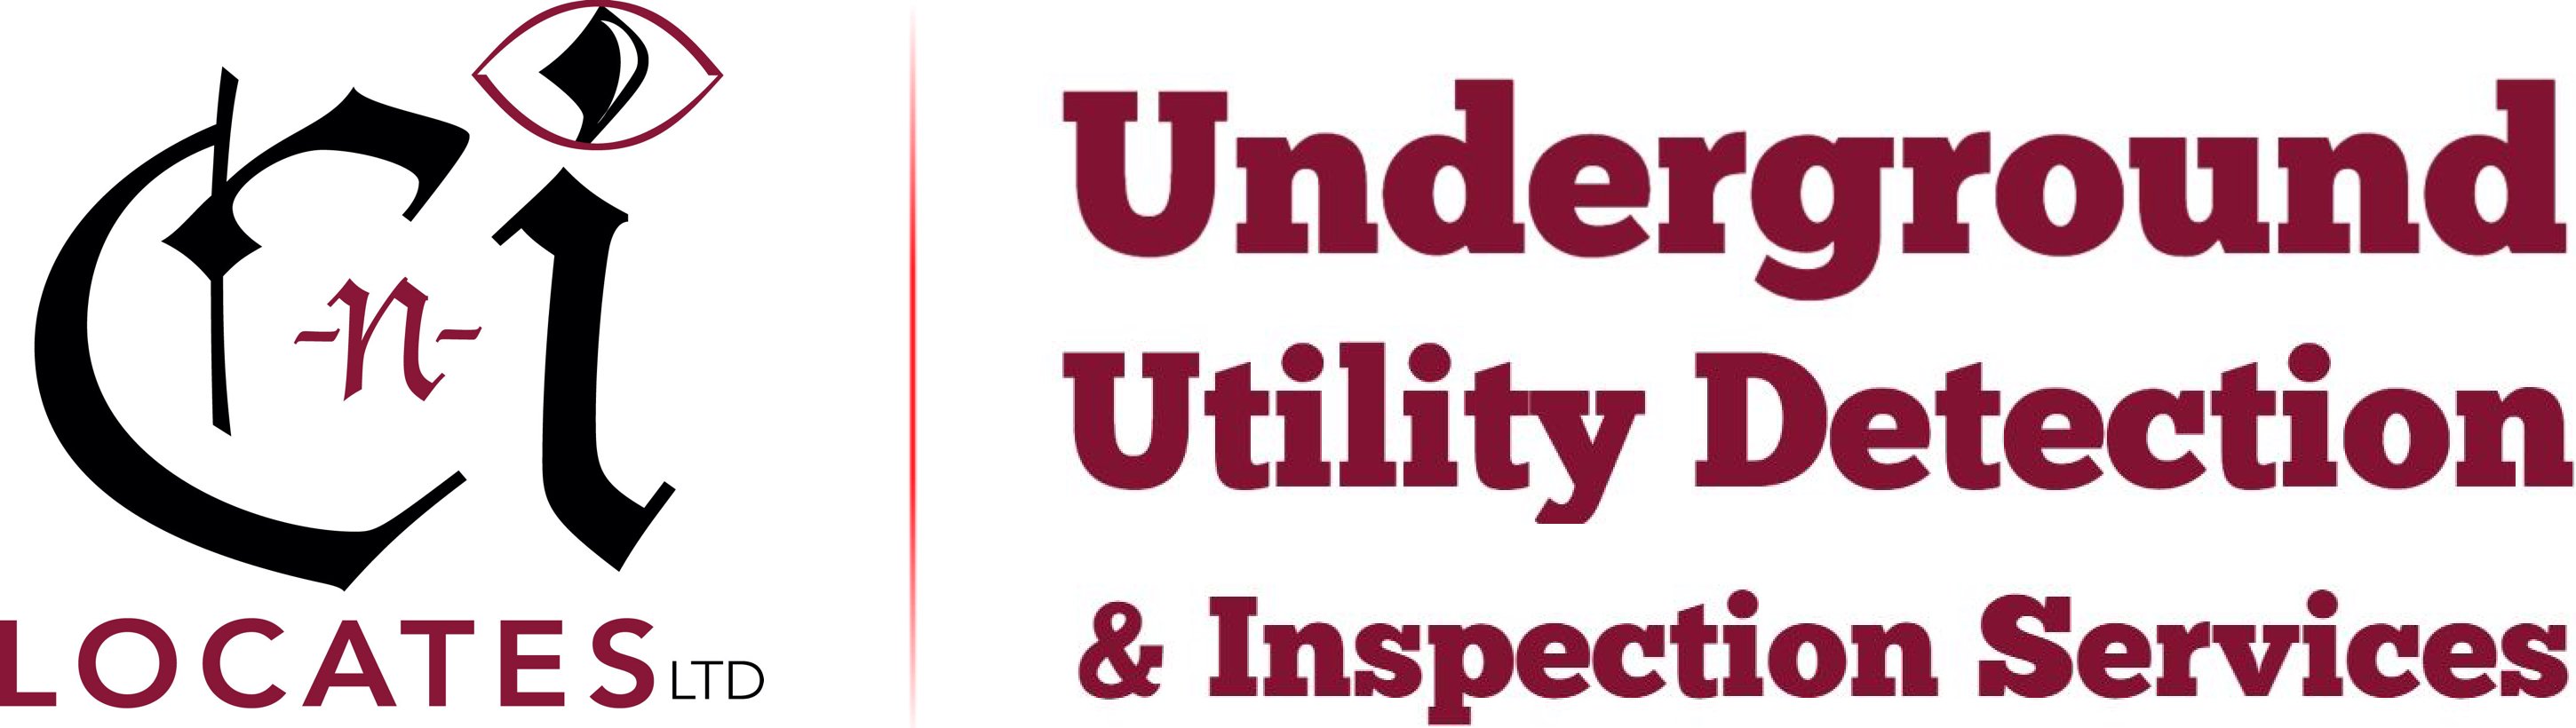 Western Washington Underground Utility Mapping Services